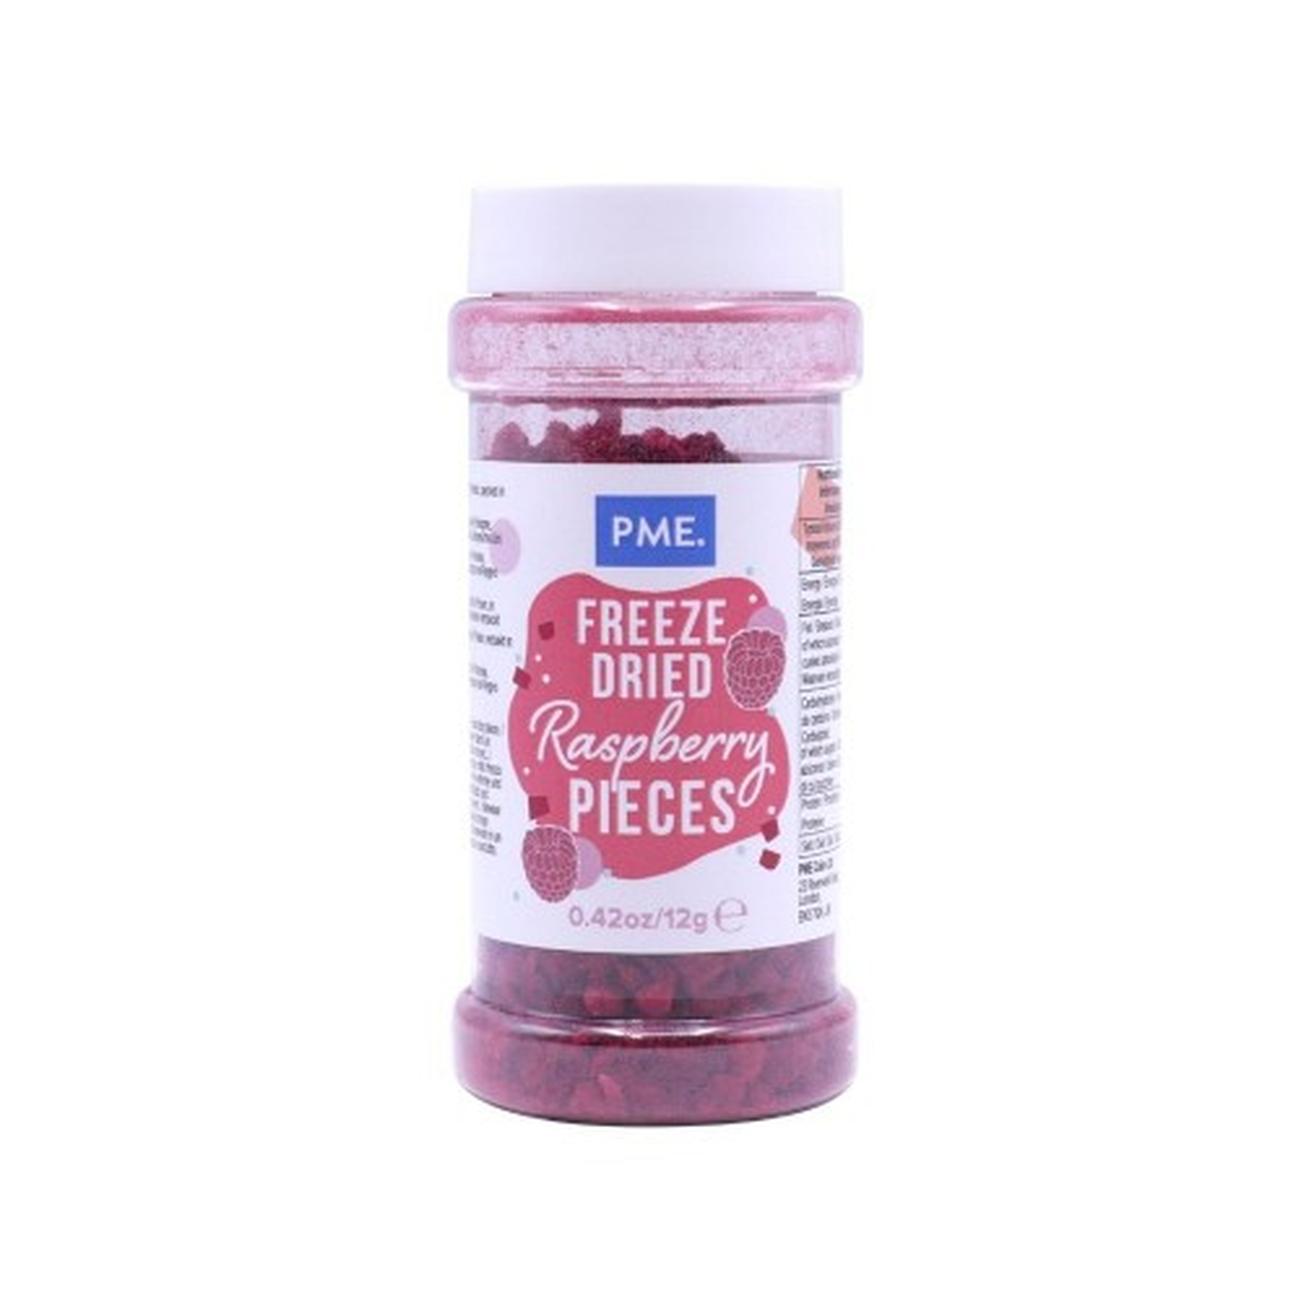 pme-freeze-dried-raspberry-pieces - PME Freeze Dried Raspberry Pieces